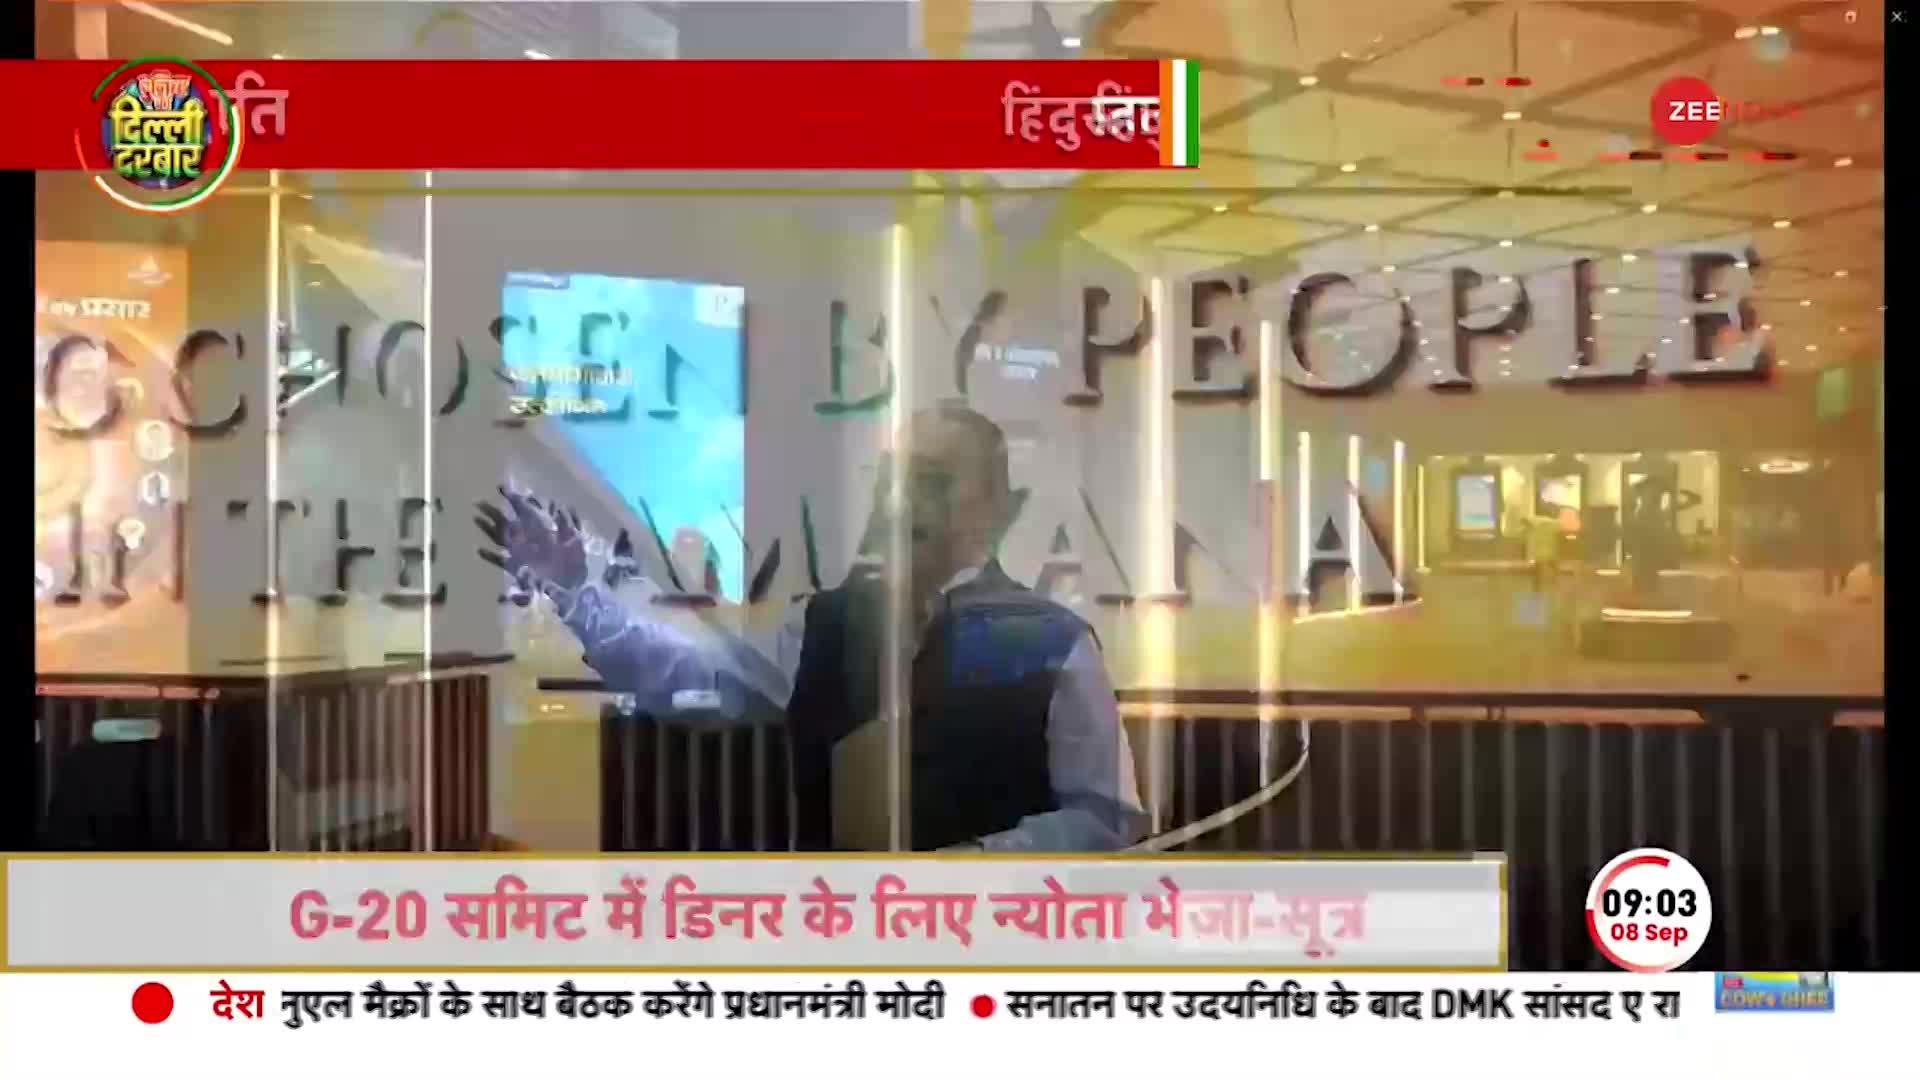 G-20 Summit Exclusive Video: सज चुका है भारत मंडपम, Zee News के पास अंदर की वीडियो